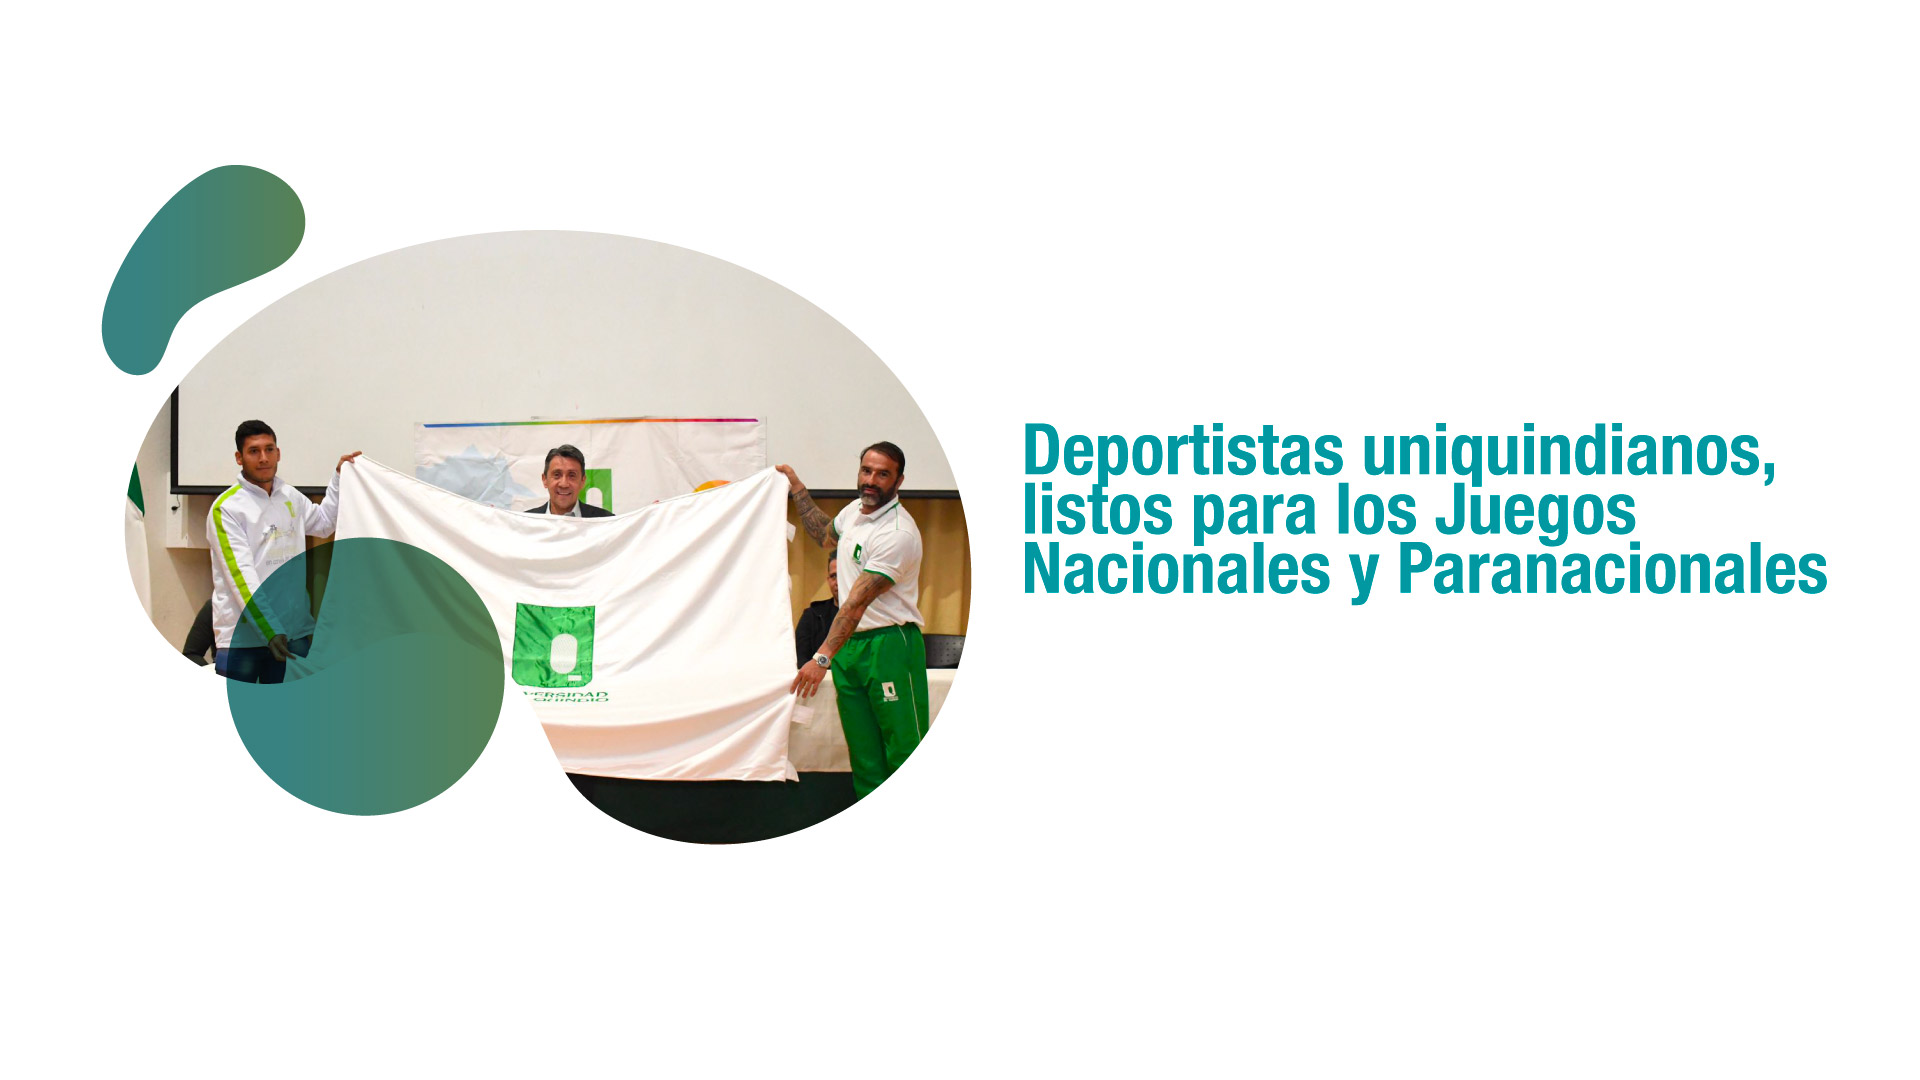 El rector entregó la bandera a los deportistas uniquindianos que nos representarán en los XXII Juegos Nacionales y VI Paranacionales